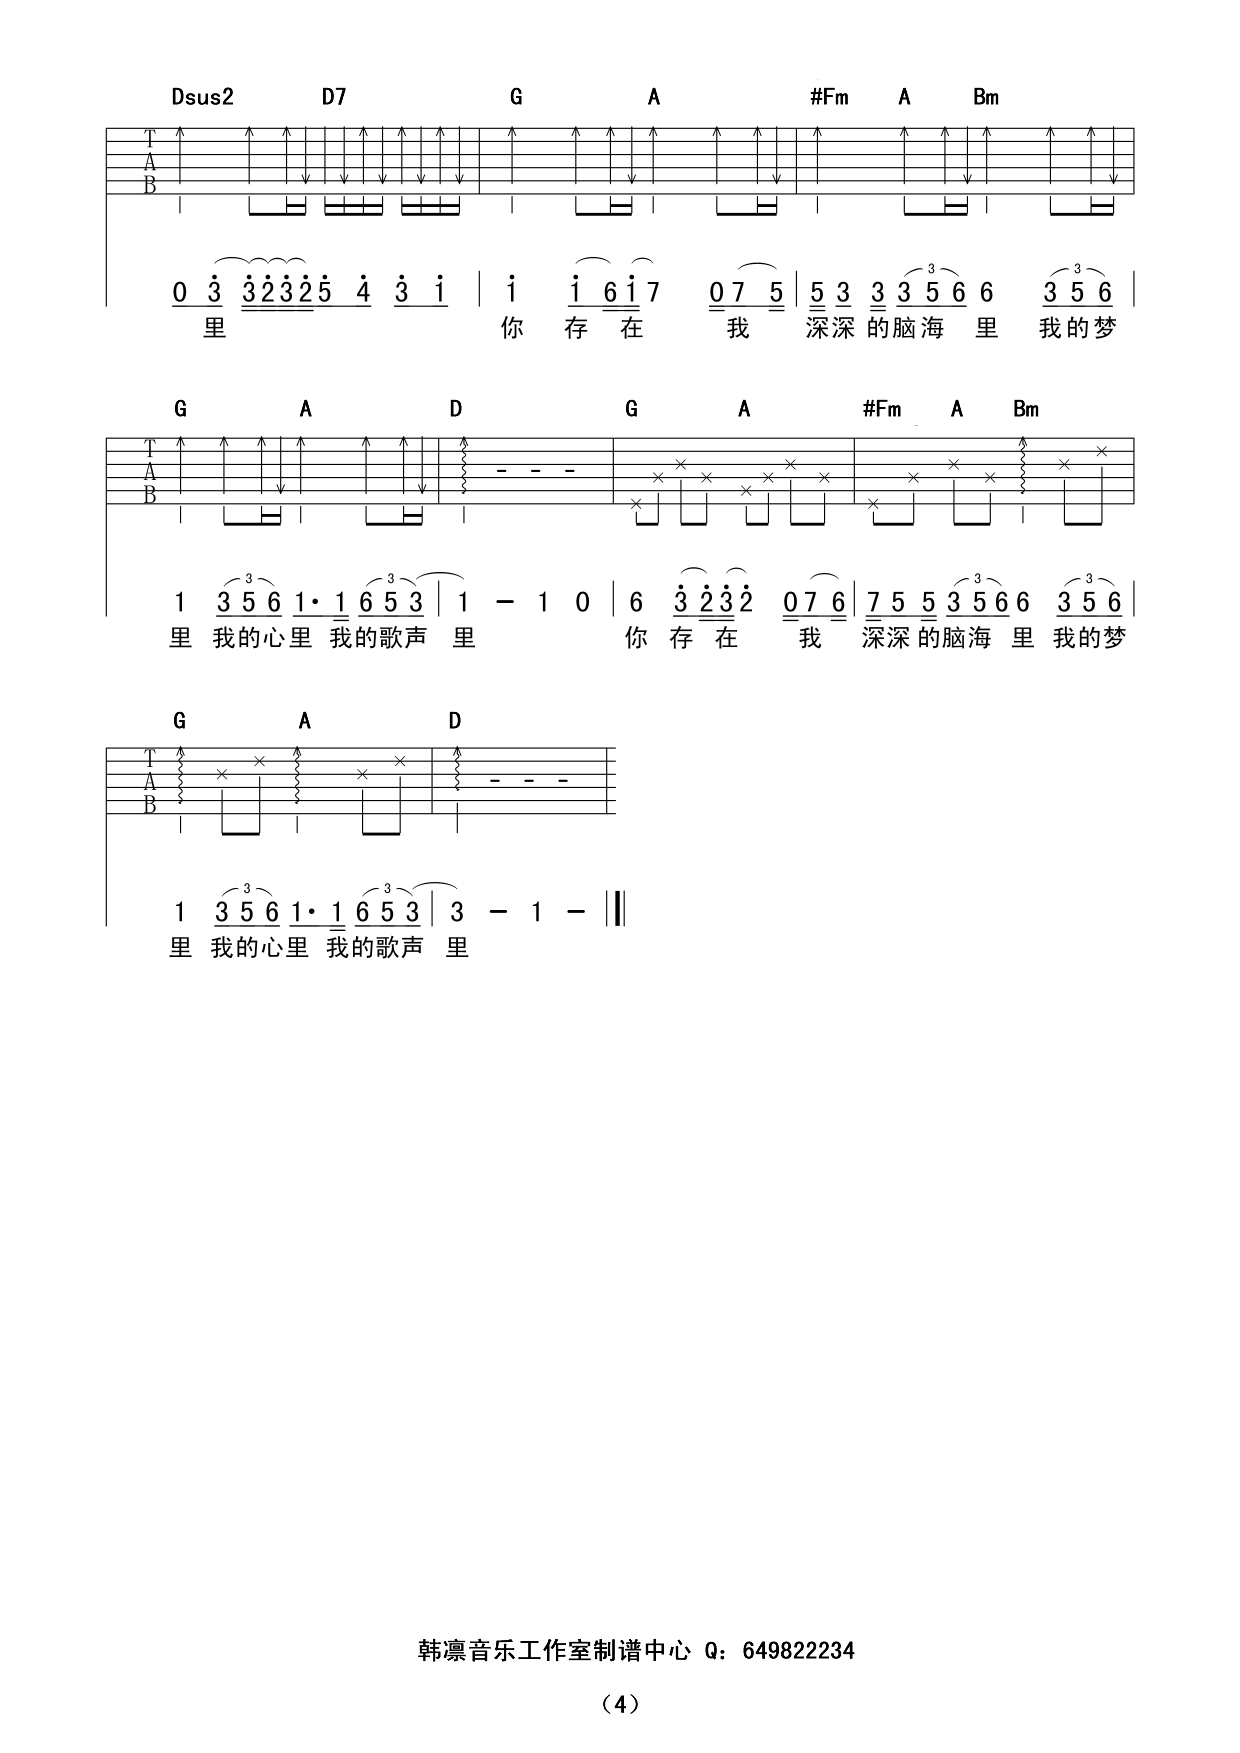 《我的歌声里》吉他曲谱完整版F#调指法编配 - 原调F#调 - 变调夹Capo=0 - 中级六线谱 - 易谱库